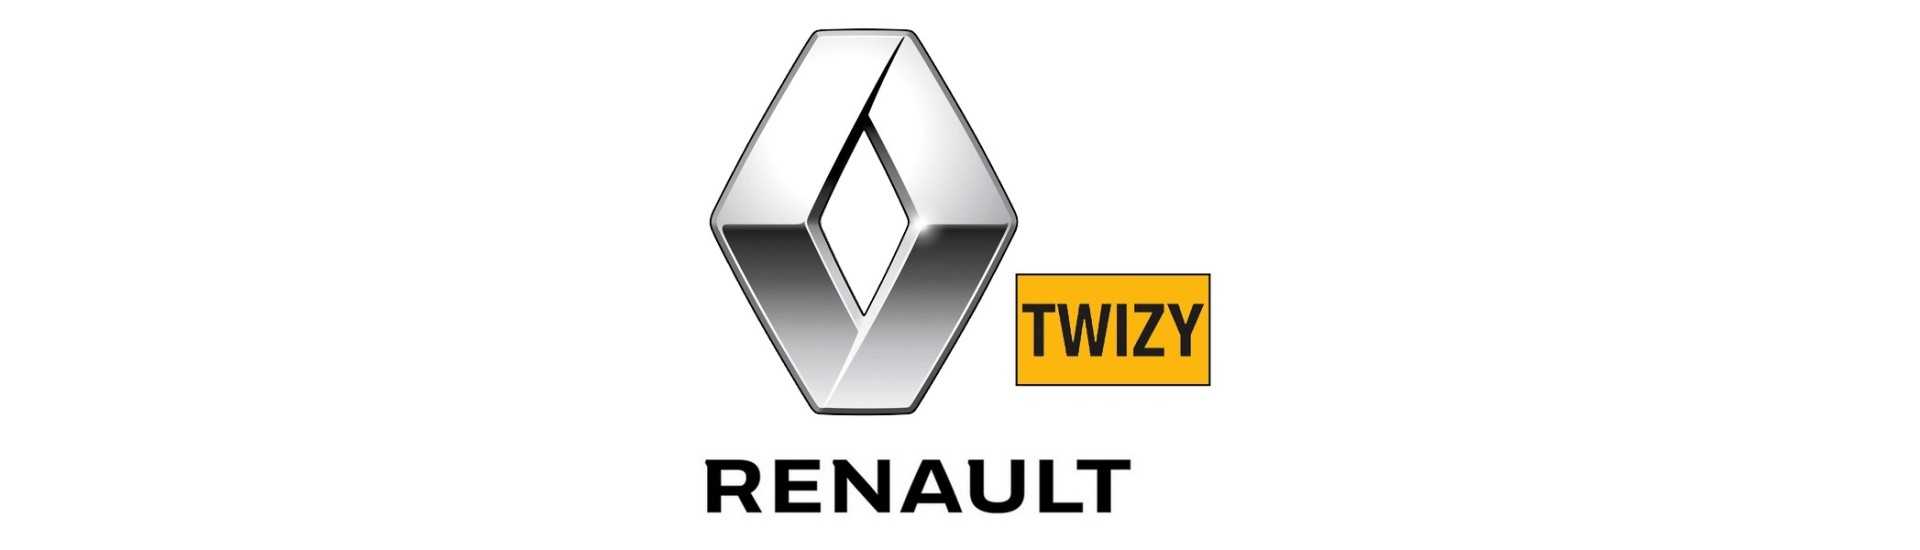 Rigid bromsslang till bästa bilpris utan tillstånd Renault